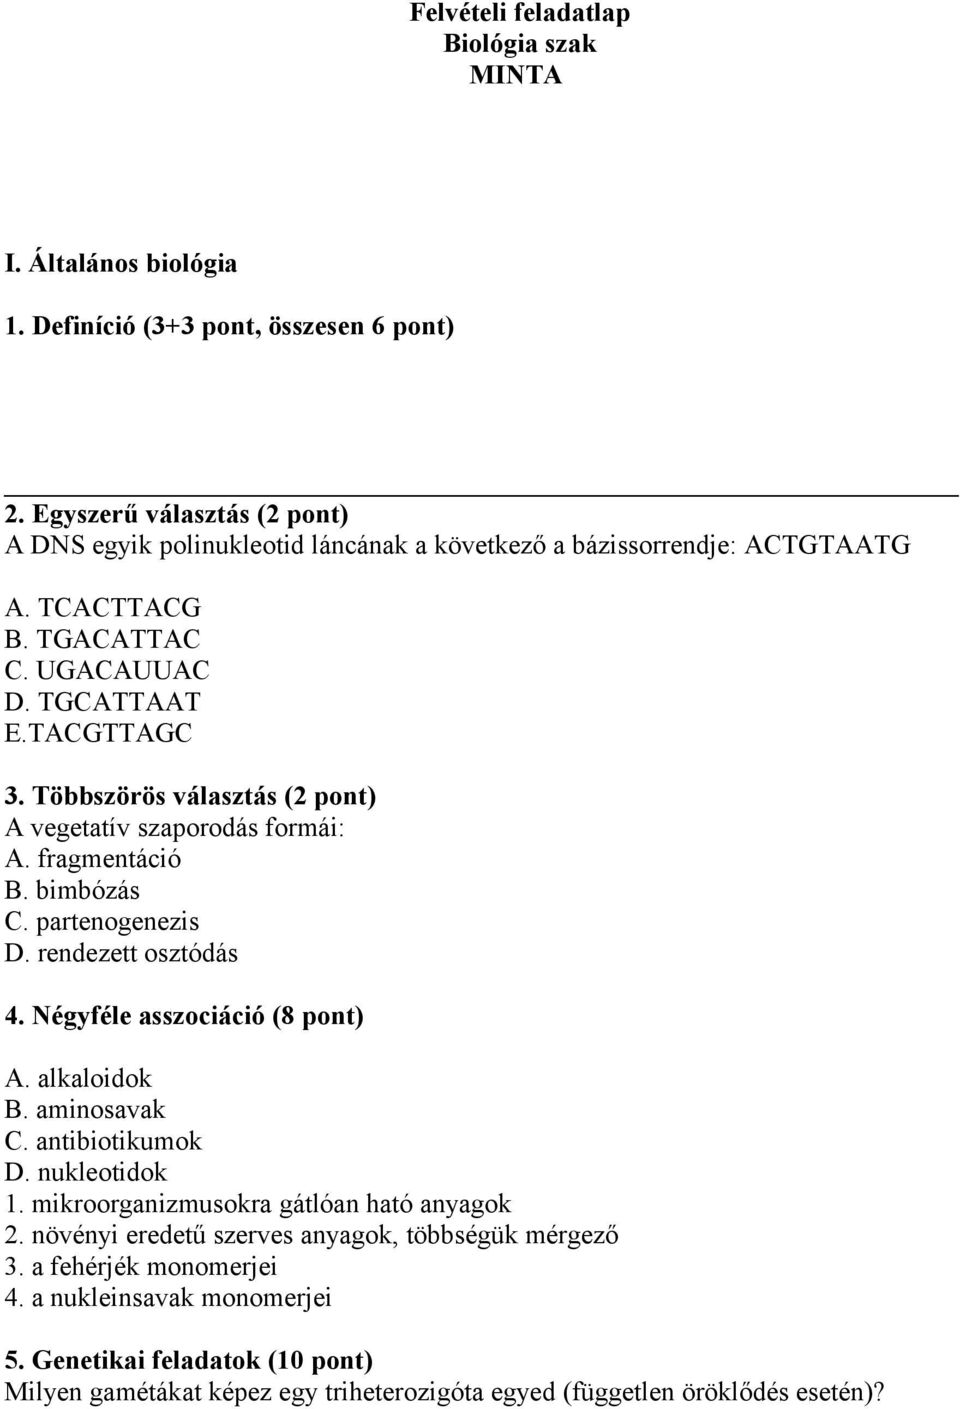 Többszörös választás (2 pont) A vegetatív szaporodás formái: A. fragmentáció B. bimbózás C. partenogenezis D. rendezett osztódás 4. Négyféle asszociáció (8 pont) A. alkaloidok B.